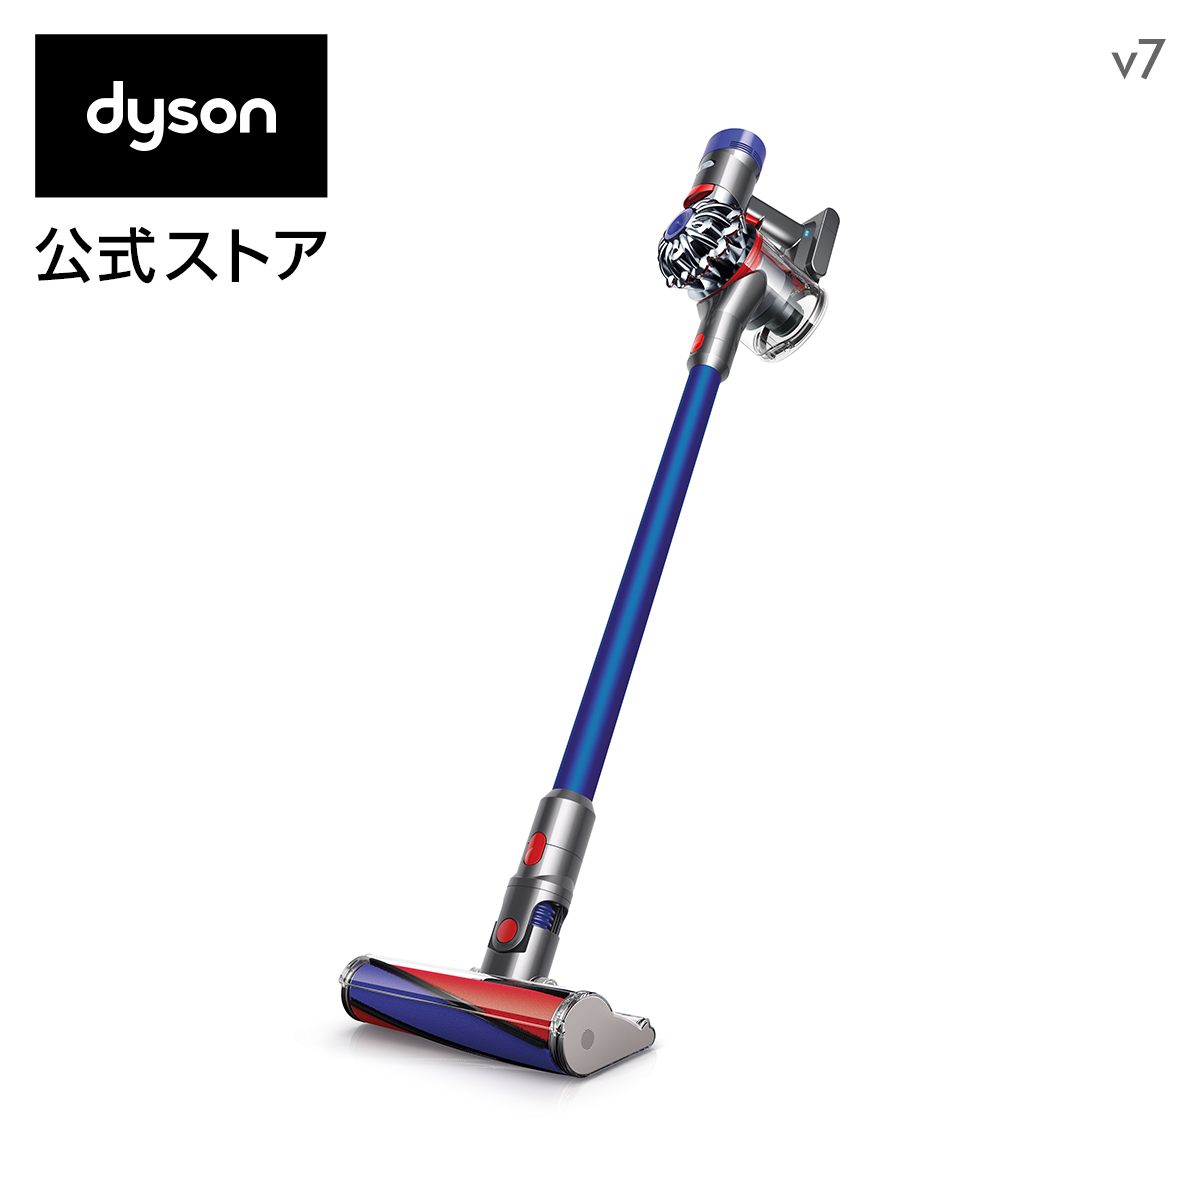 ダイソン Dyson V7 サイクロン式 コードレス掃除機 dyson SV11FFOLB 2018年モデル